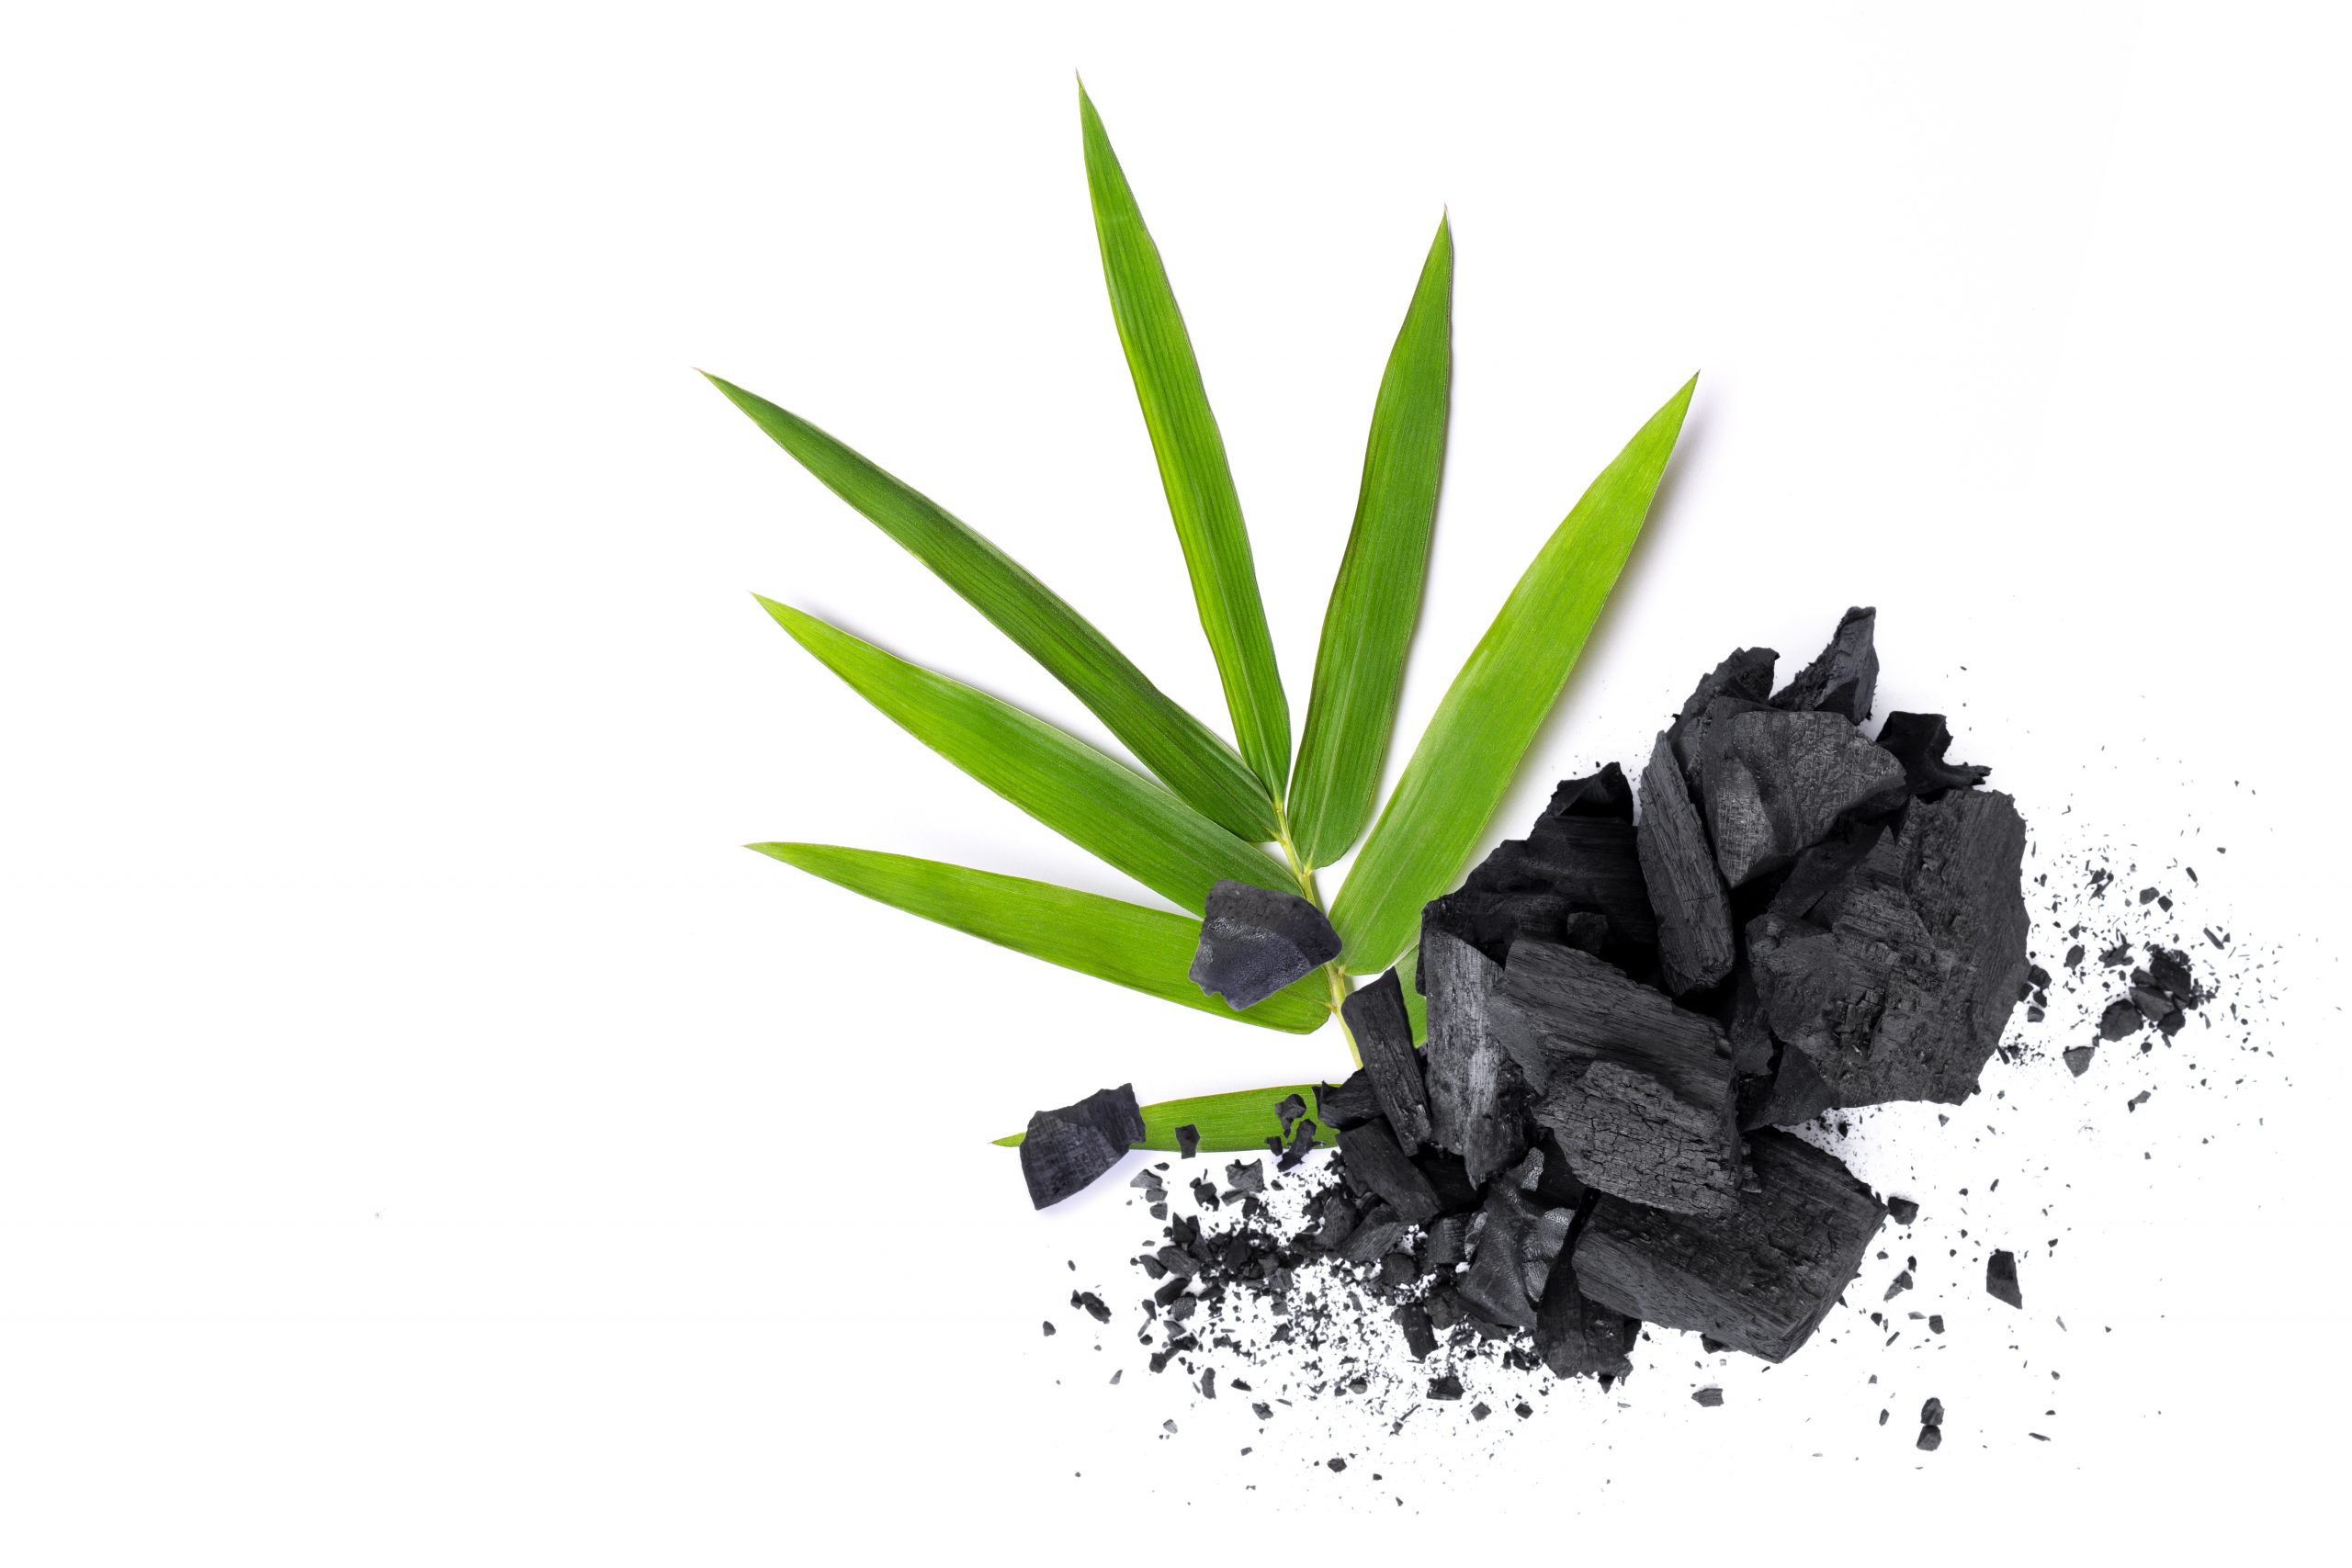 carbone-vegetale-usi-benefici